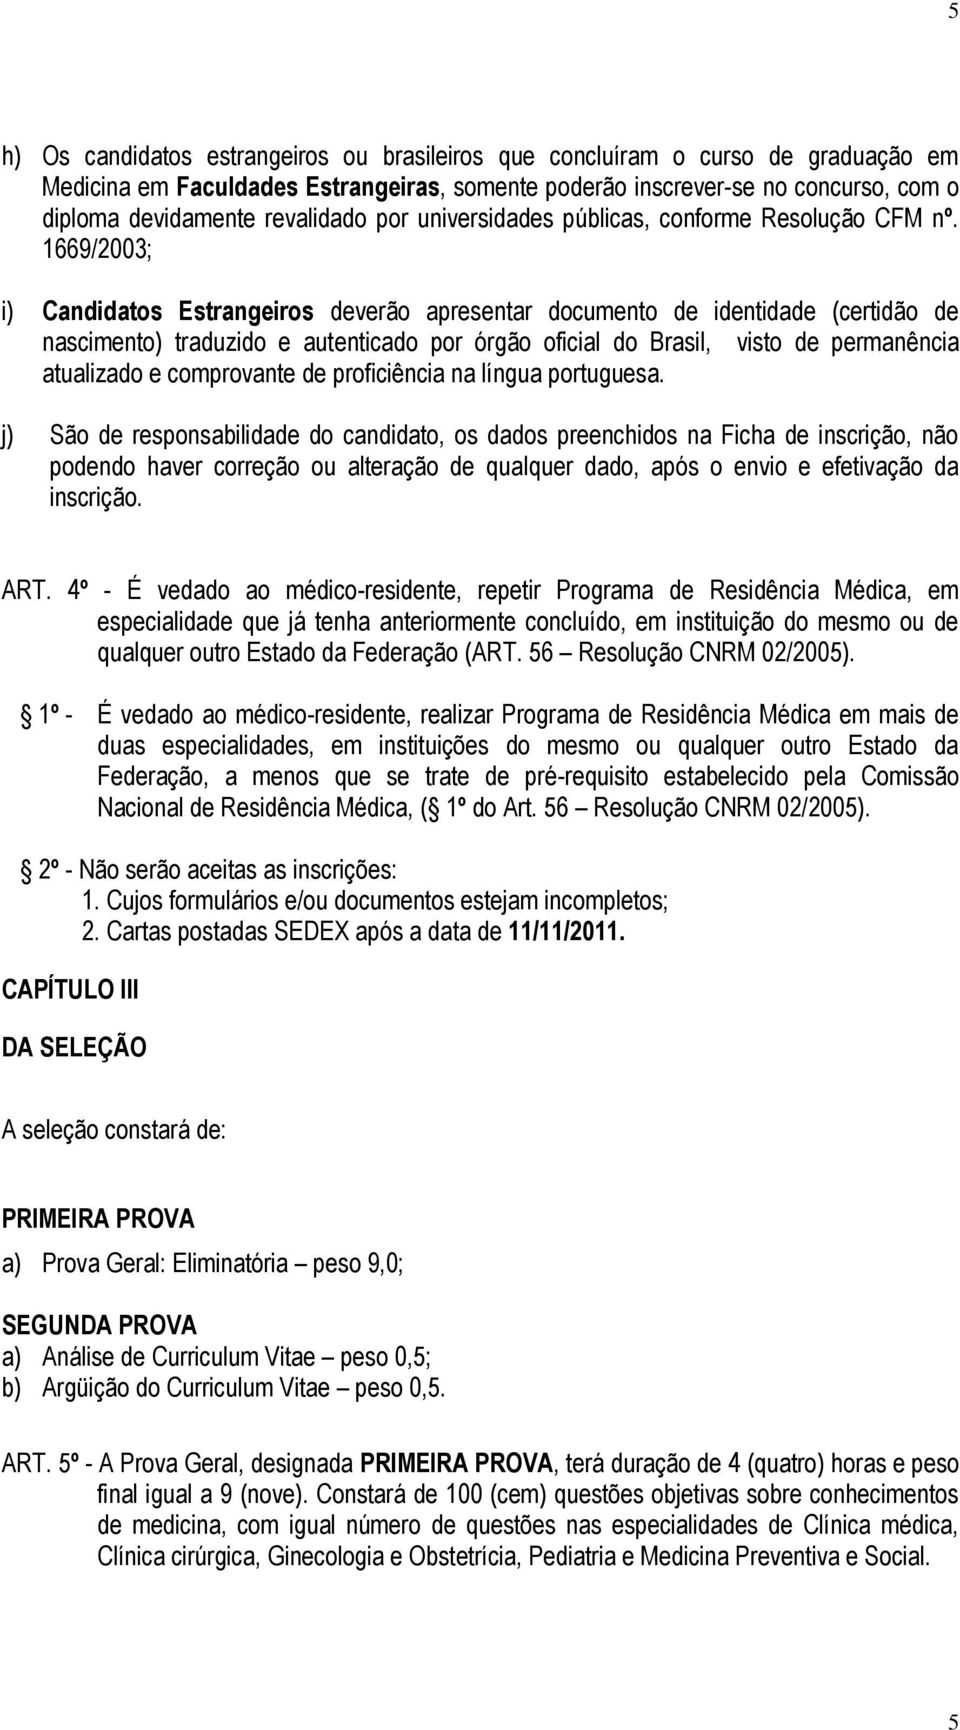 1669/2003; i) Candidatos Estrangeiros deverão apresentar documento de identidade (certidão de nascimento) traduzido e autenticado por órgão oficial do Brasil, visto de permanência atualizado e